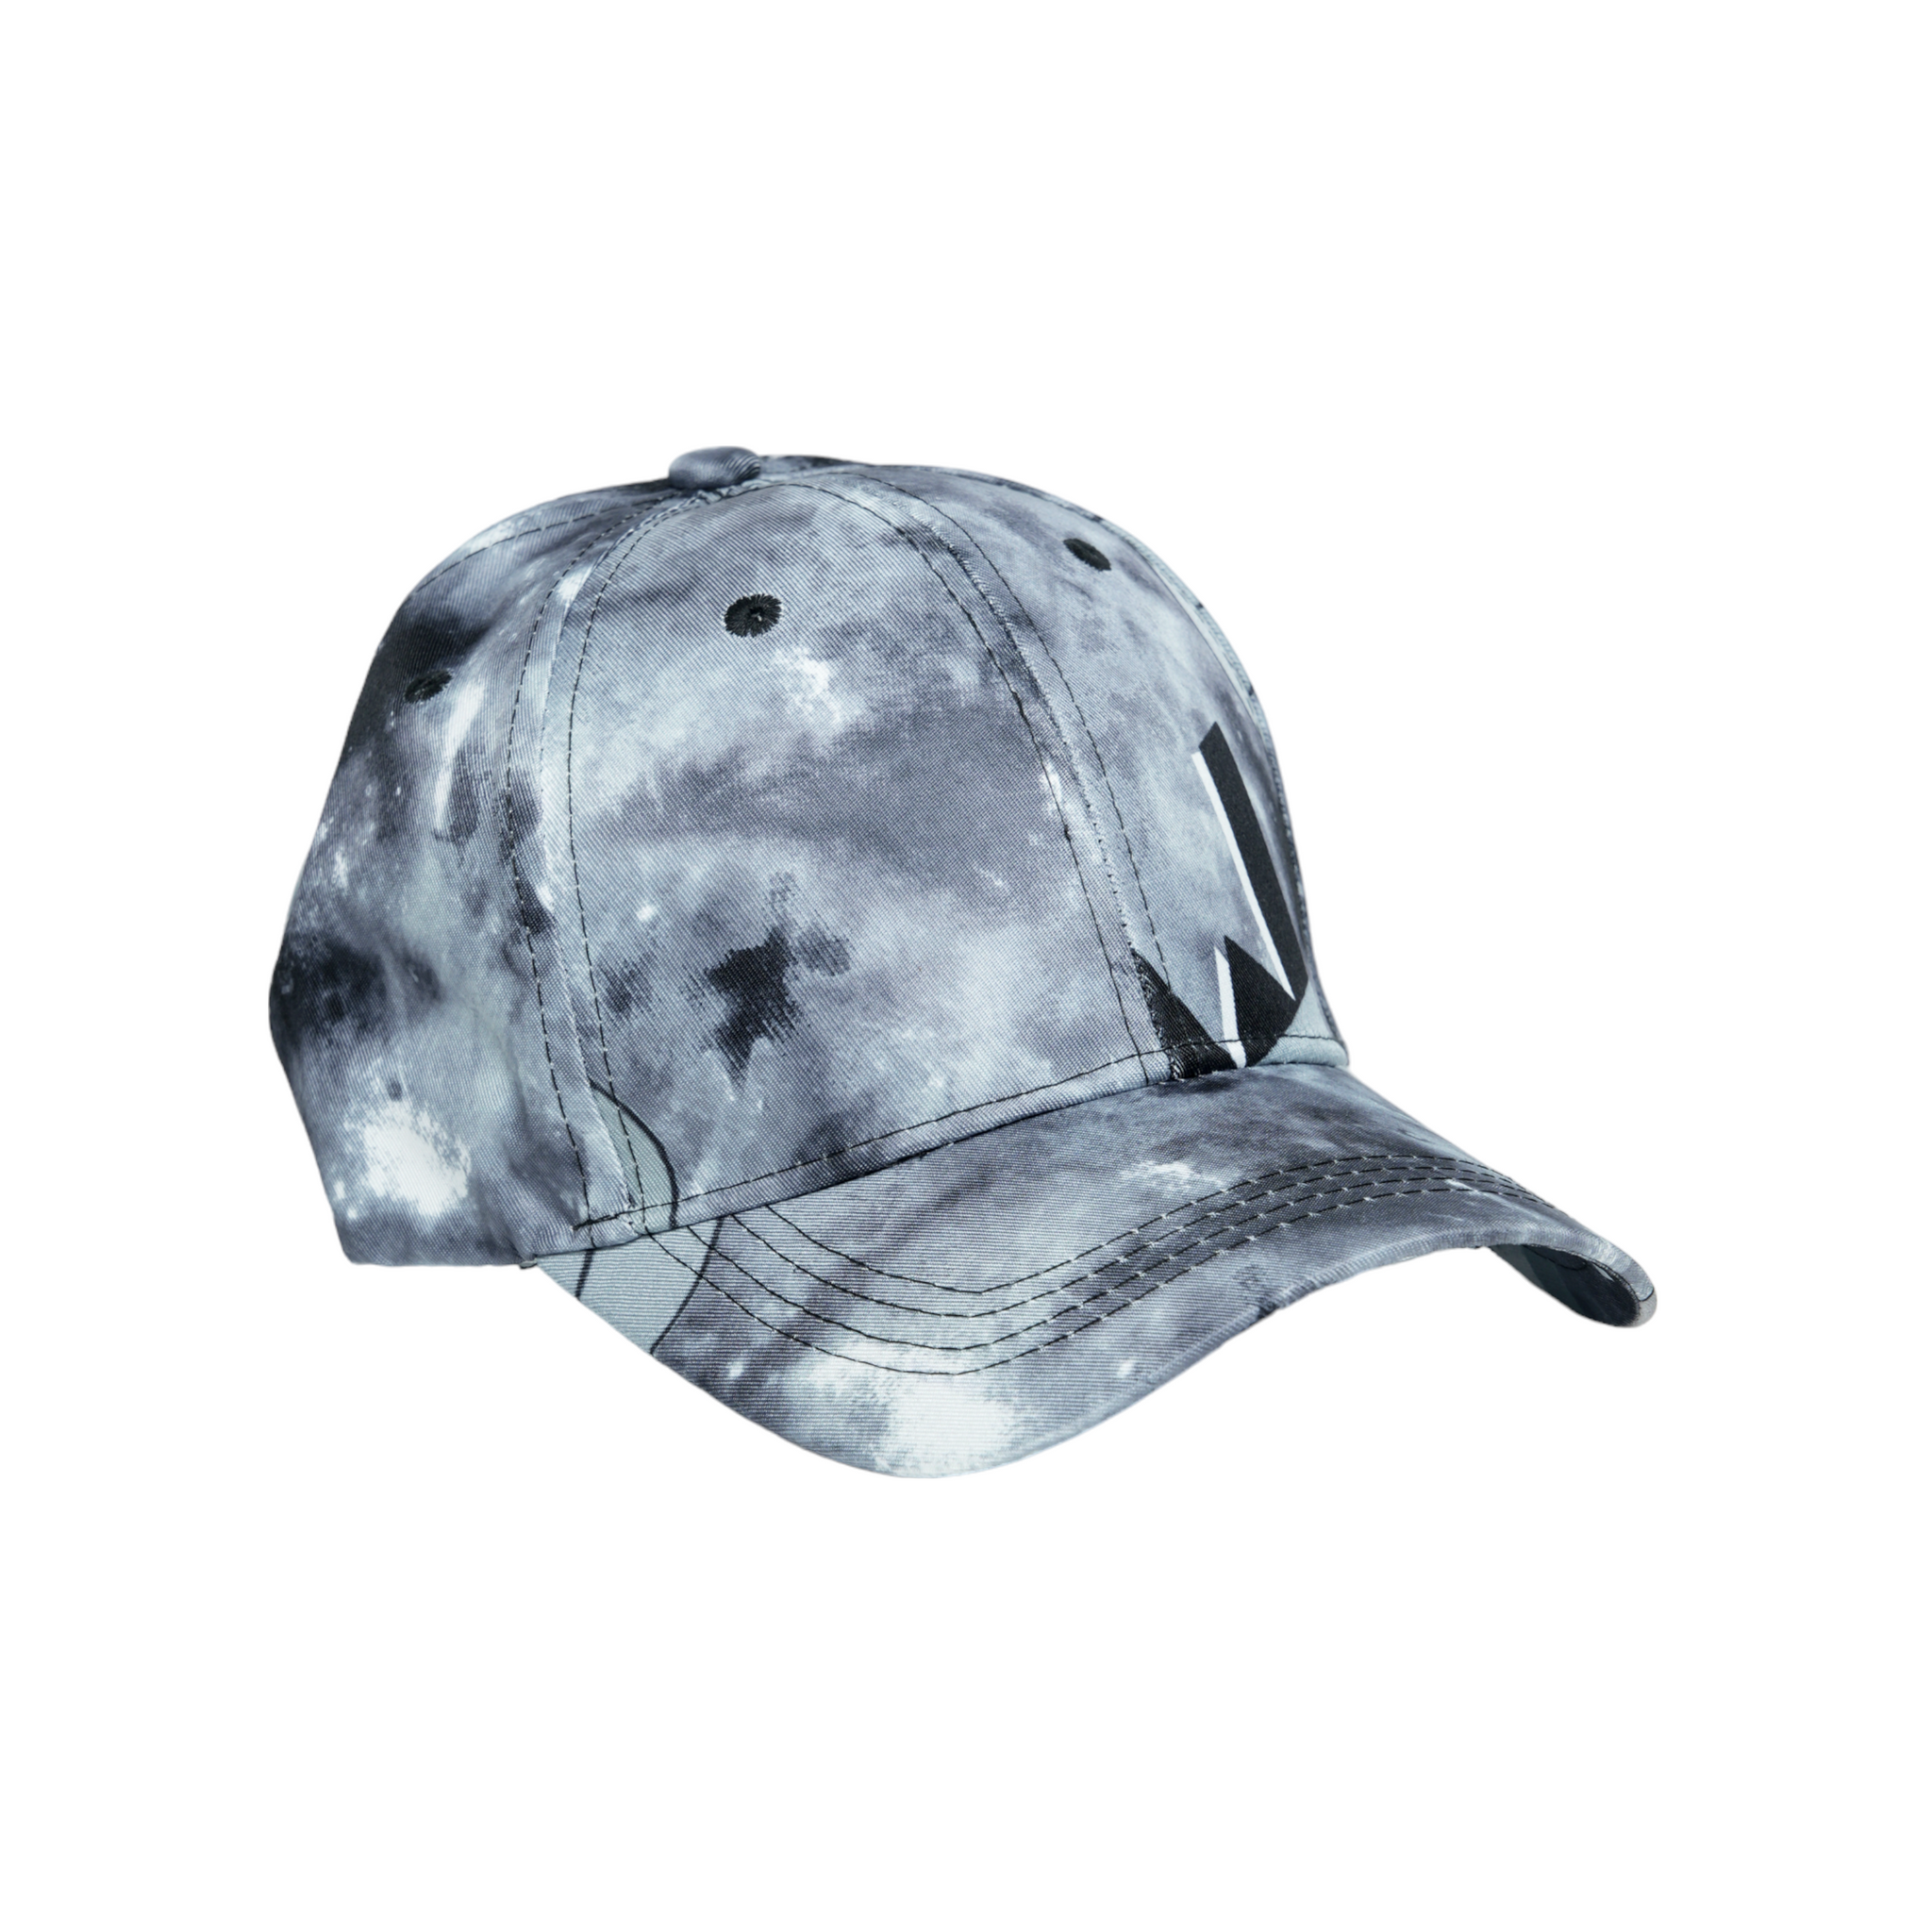 Chokore Tie-Dye Baseball Cap (Gray)